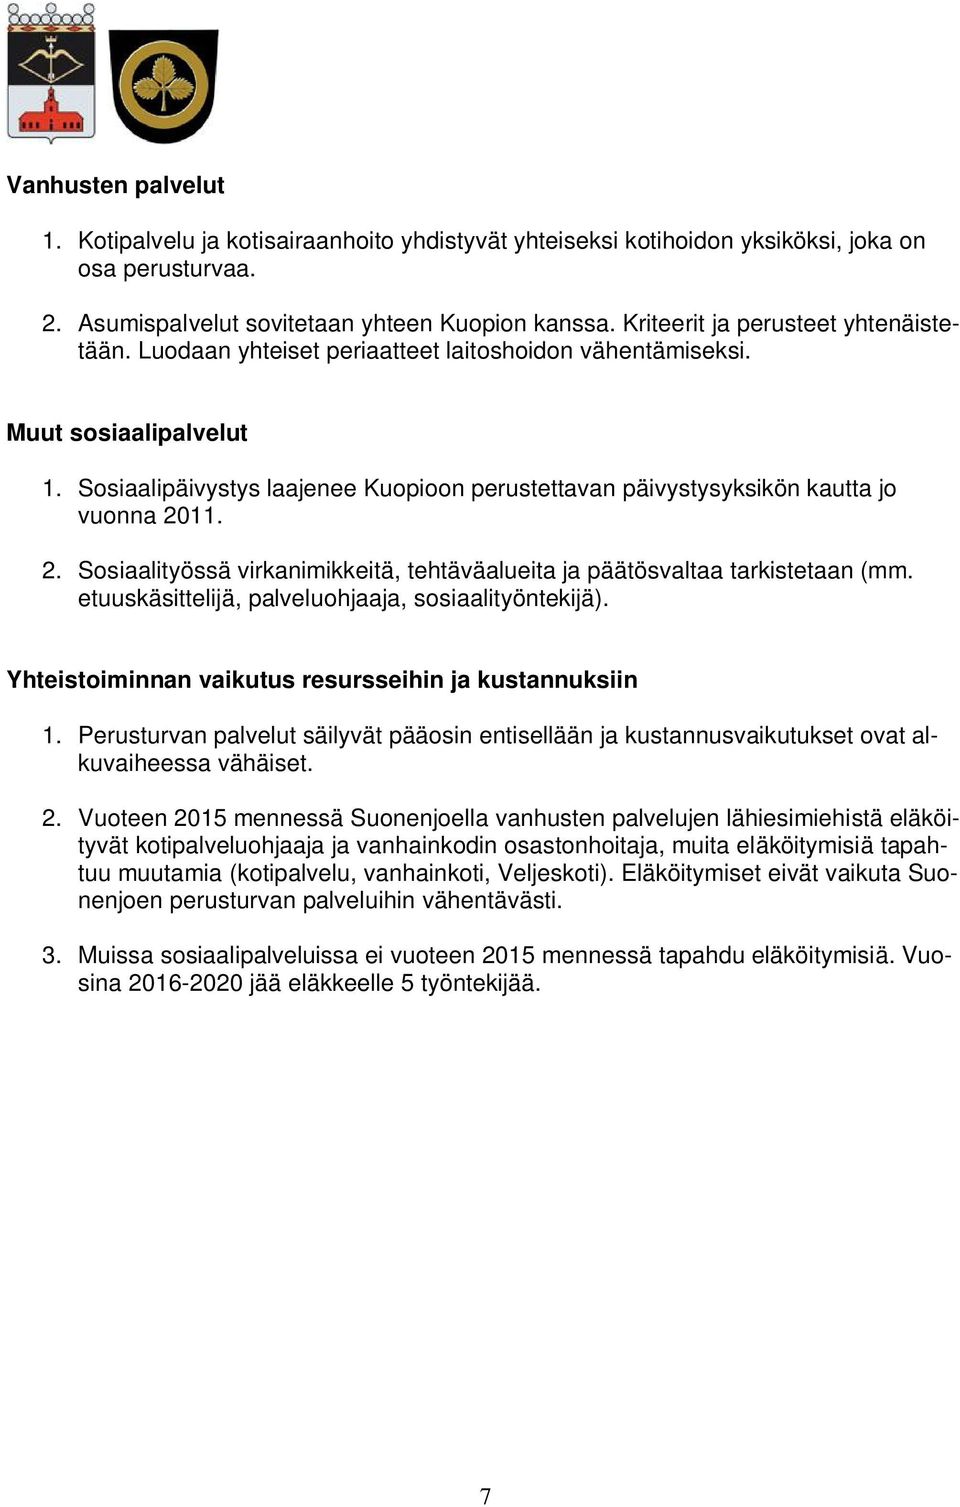 Sosiaalipäivystys laajenee Kuopioon perustettavan päivystysyksikön kautta jo vuonna 2011. 2. Sosiaalityössä virkanimikkeitä, tehtäväalueita ja päätösvaltaa tarkistetaan (mm.